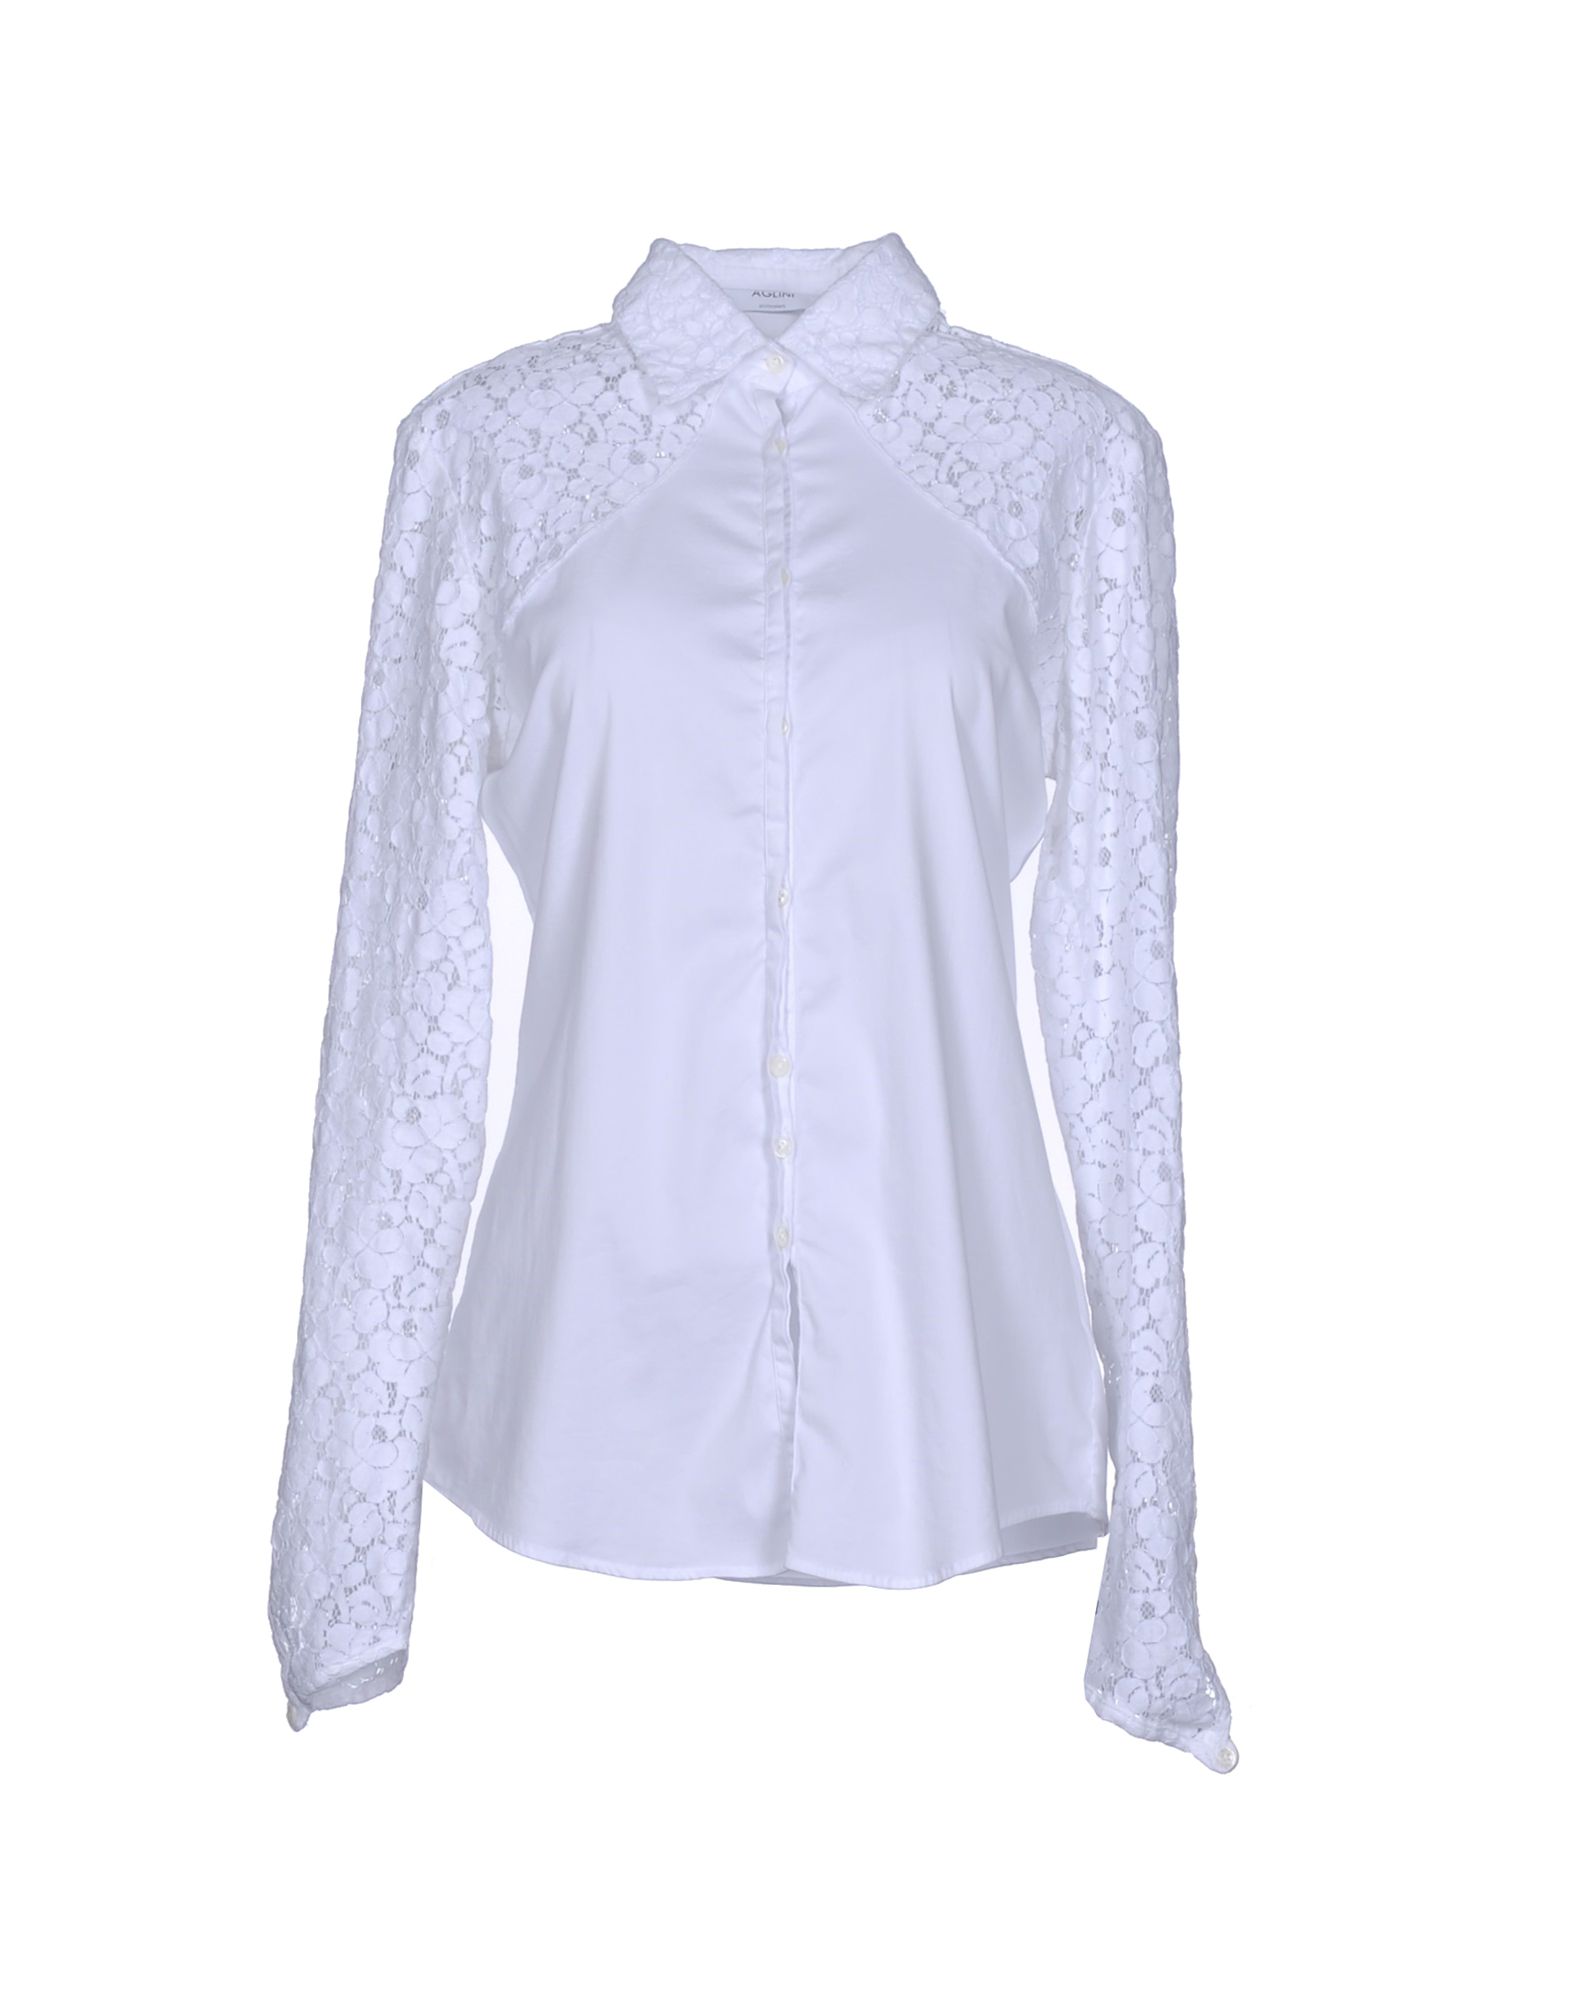 AGLINI Lace shirts & blouses,38613002TT 3